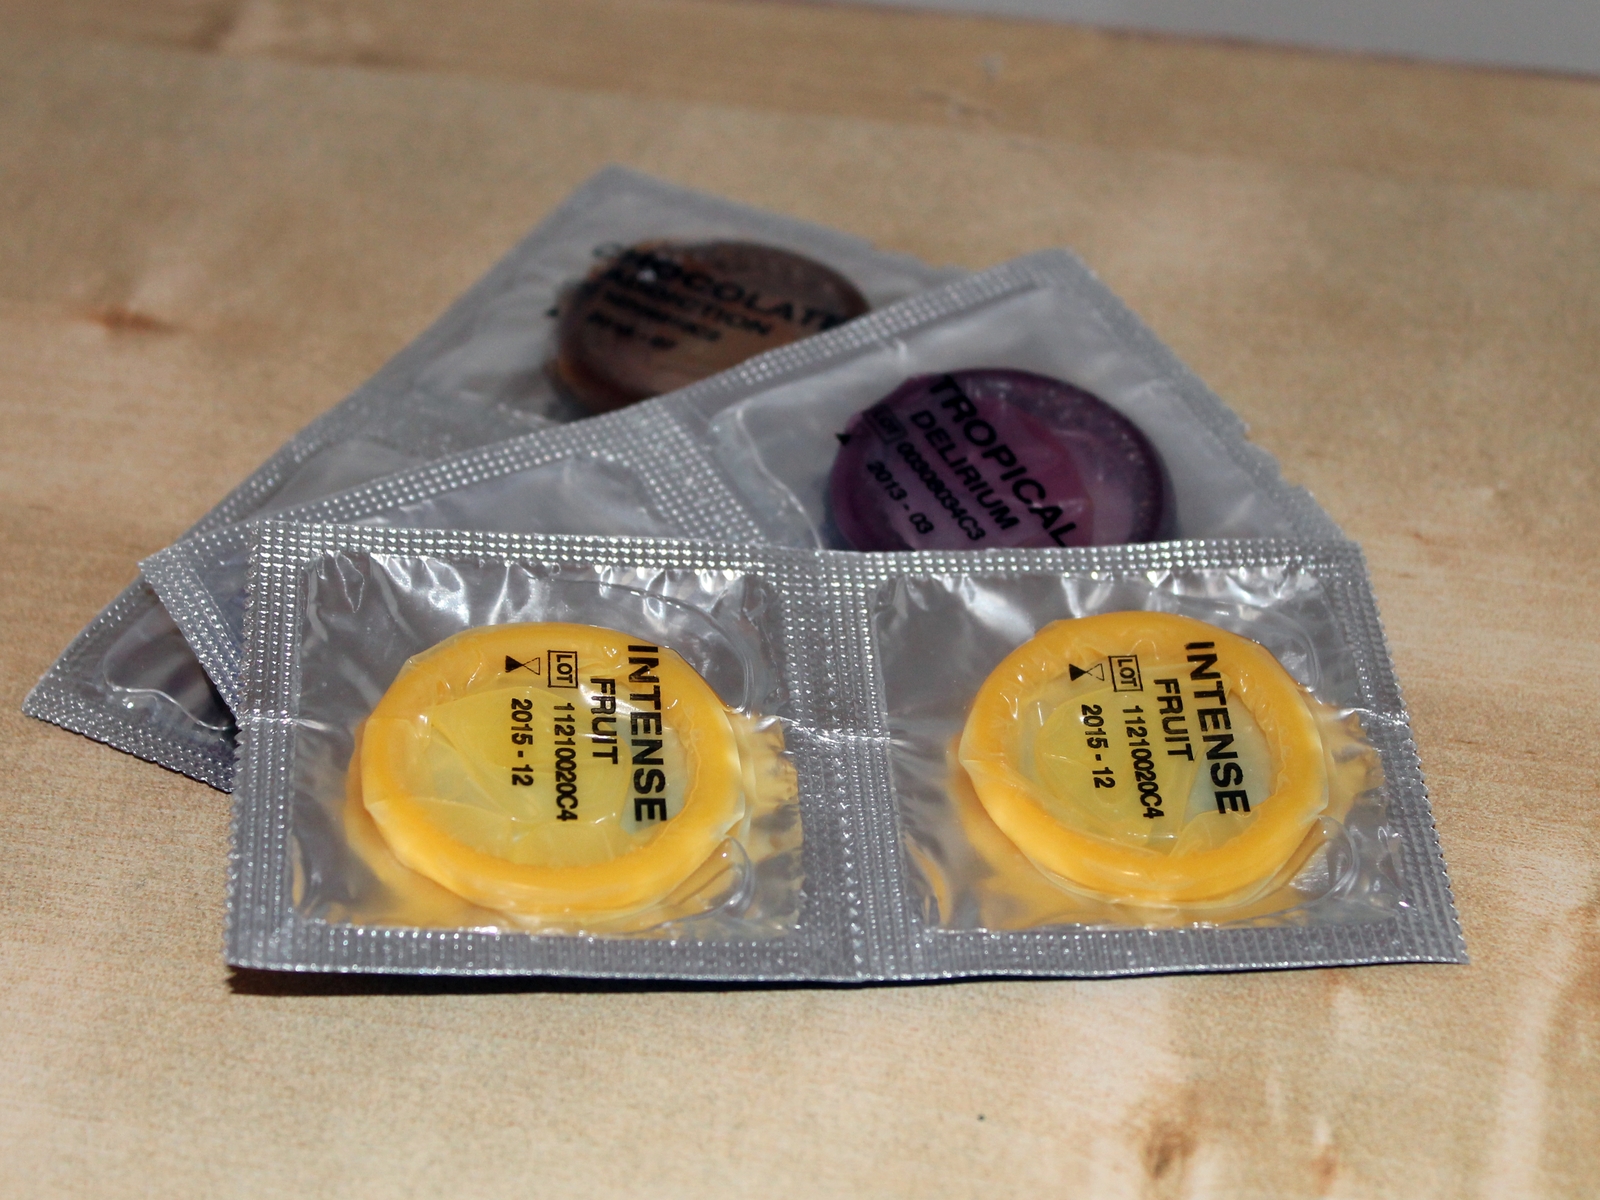 Bbc remove condom